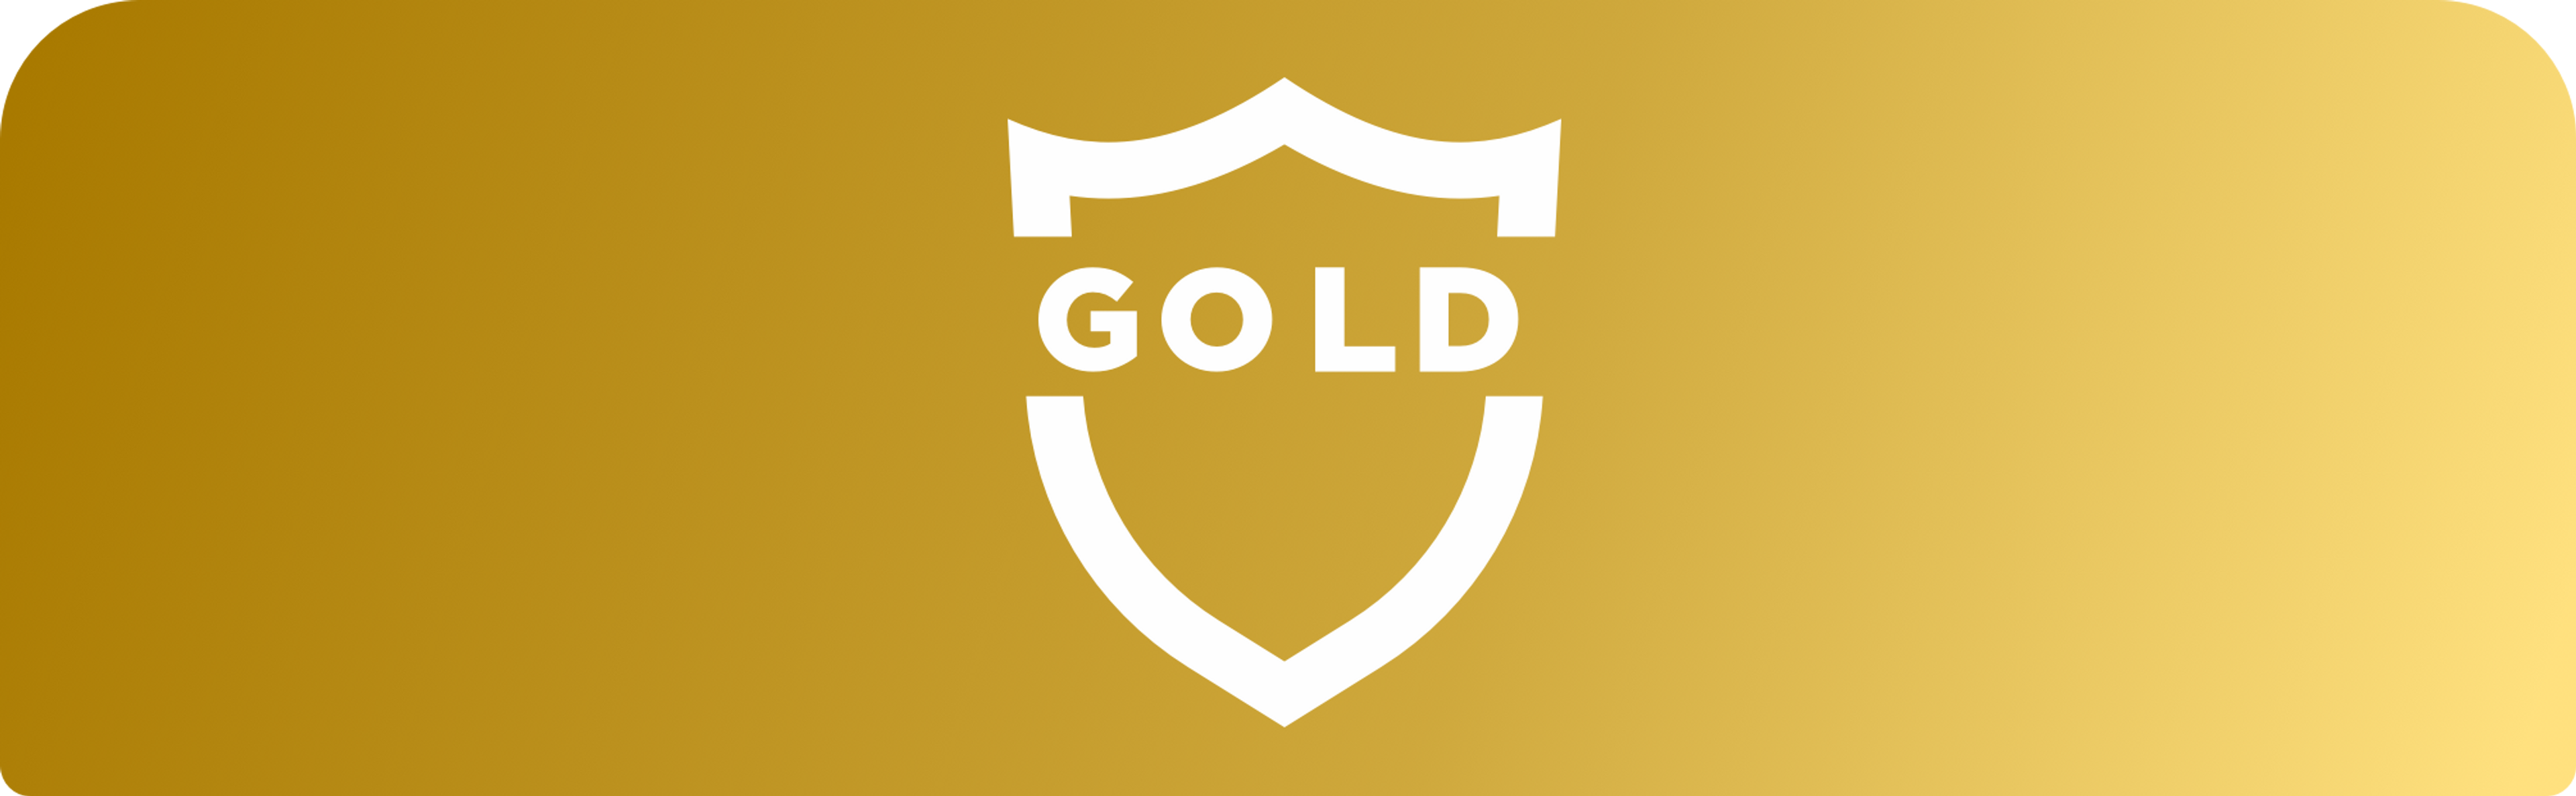 Image au fond doré avec icône blanche de bouclier et le mot « OR » centré en lettres majuscules